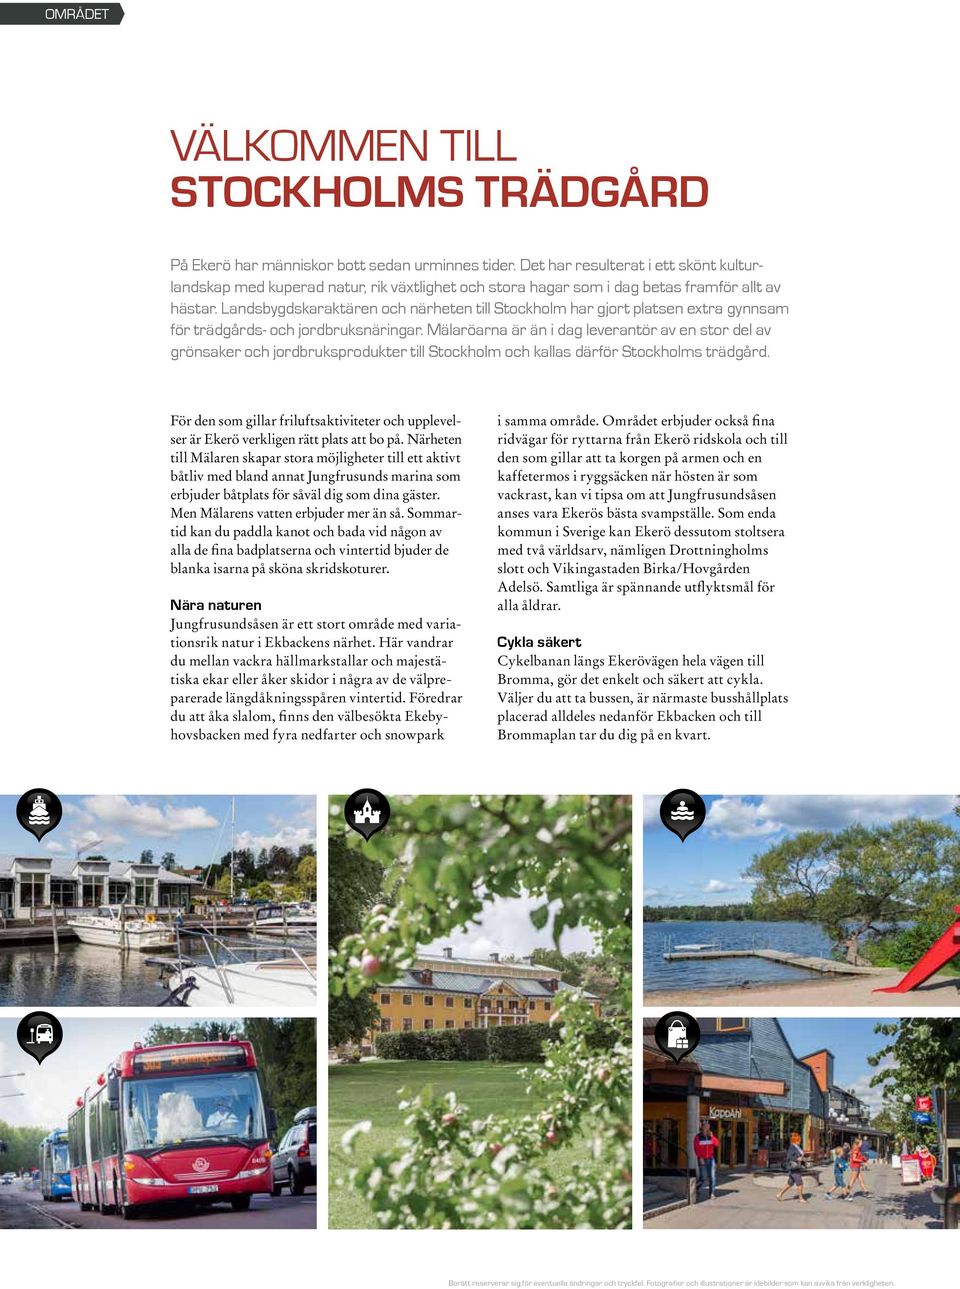 Landsbygdskaraktären och närheten till Stockholm har gjort platsen extra gynnsam för trädgårds- och jordbruksnäringar.